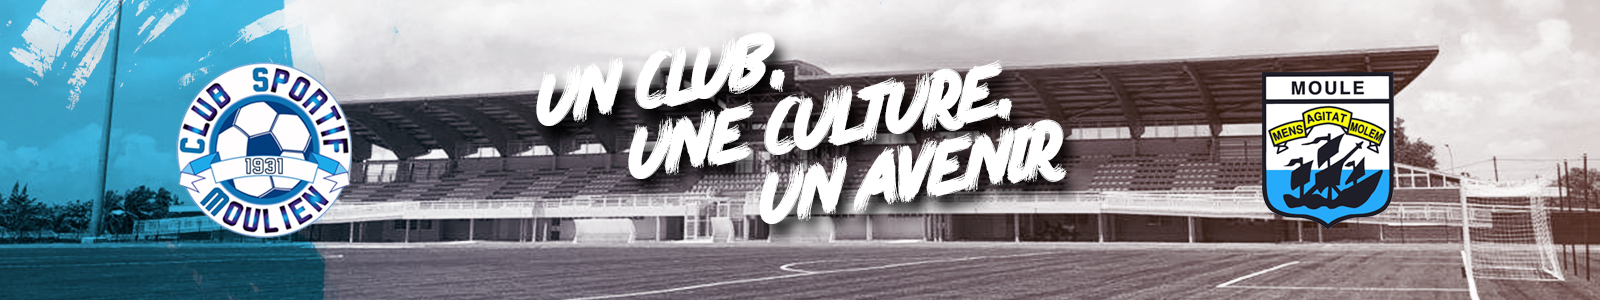 CLUB SPORTIF MOULIEN : site officiel du club de foot de LE MOULE - footeo